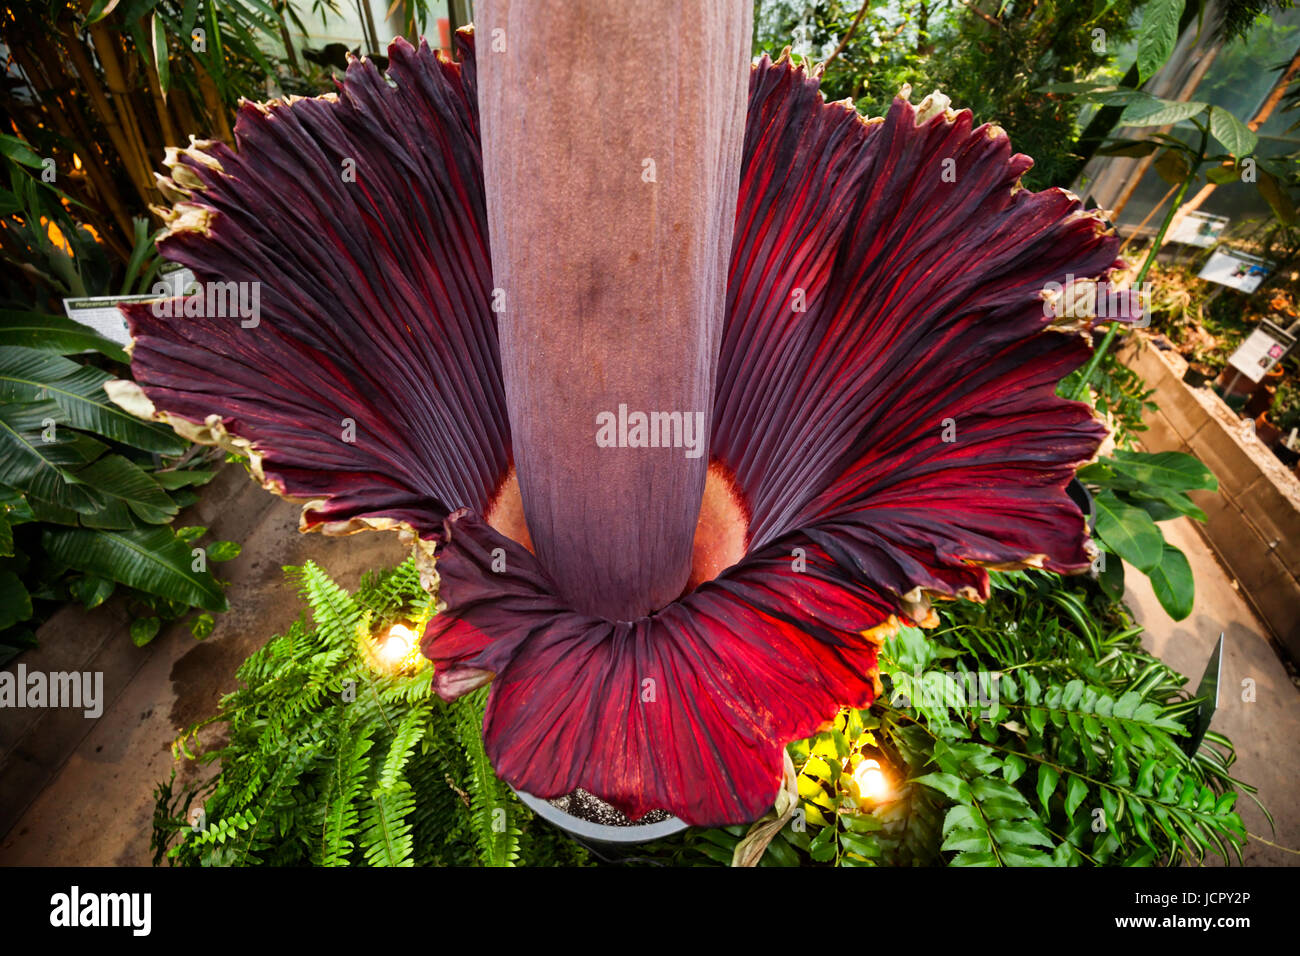 Un arum titan Amorphophallus titanum ou en pleine floraison, c'est une charogne ou fleur qui est originaire de l'Ouest de Sumatra. Banque D'Images